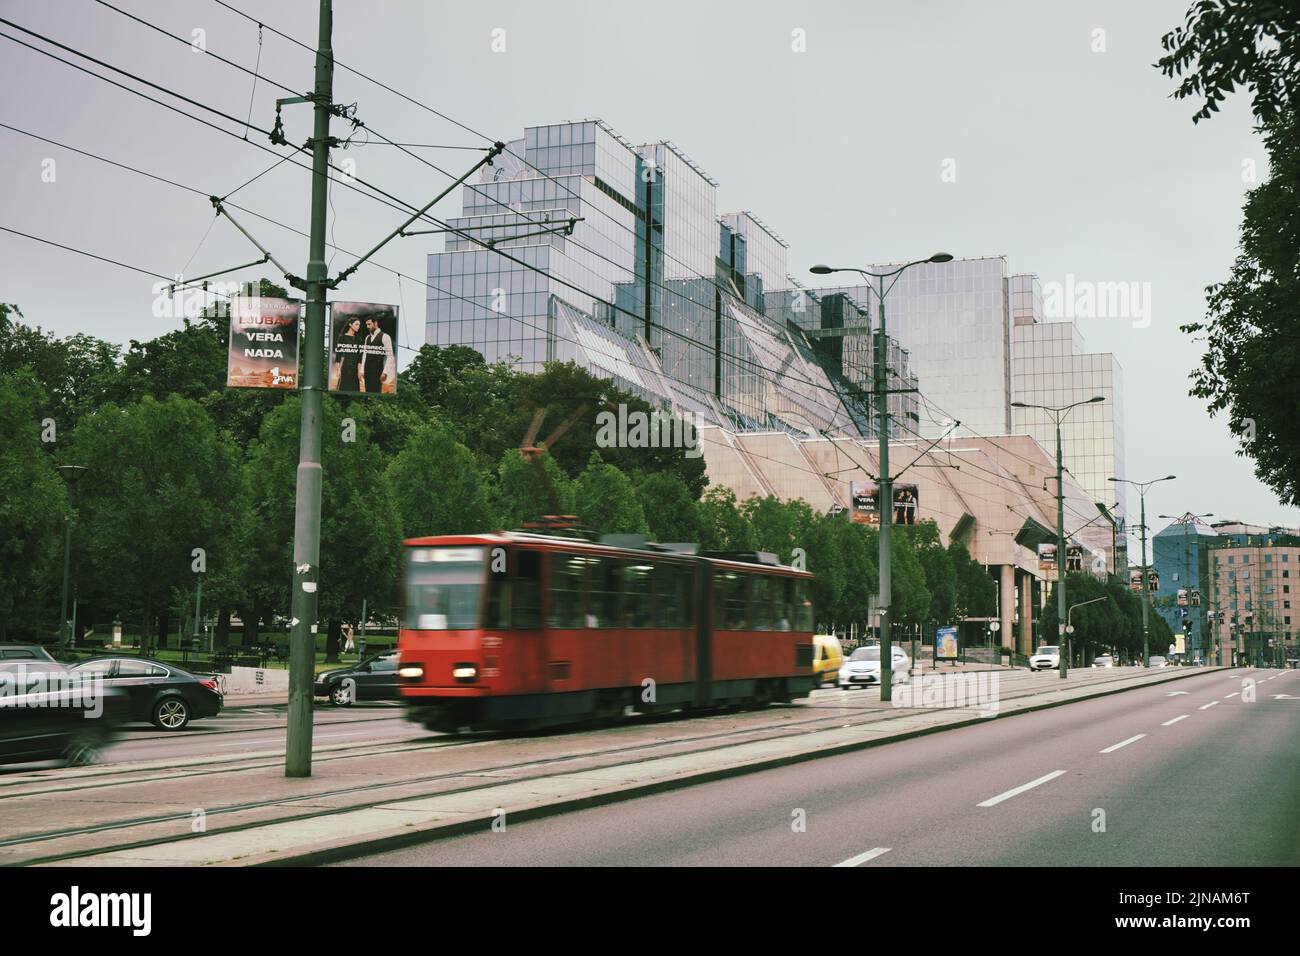 Nueva escena callejera de Belgrado con modernos edificios de vidrio y tranvía rojo en movimiento borroso, Serbia Foto de stock